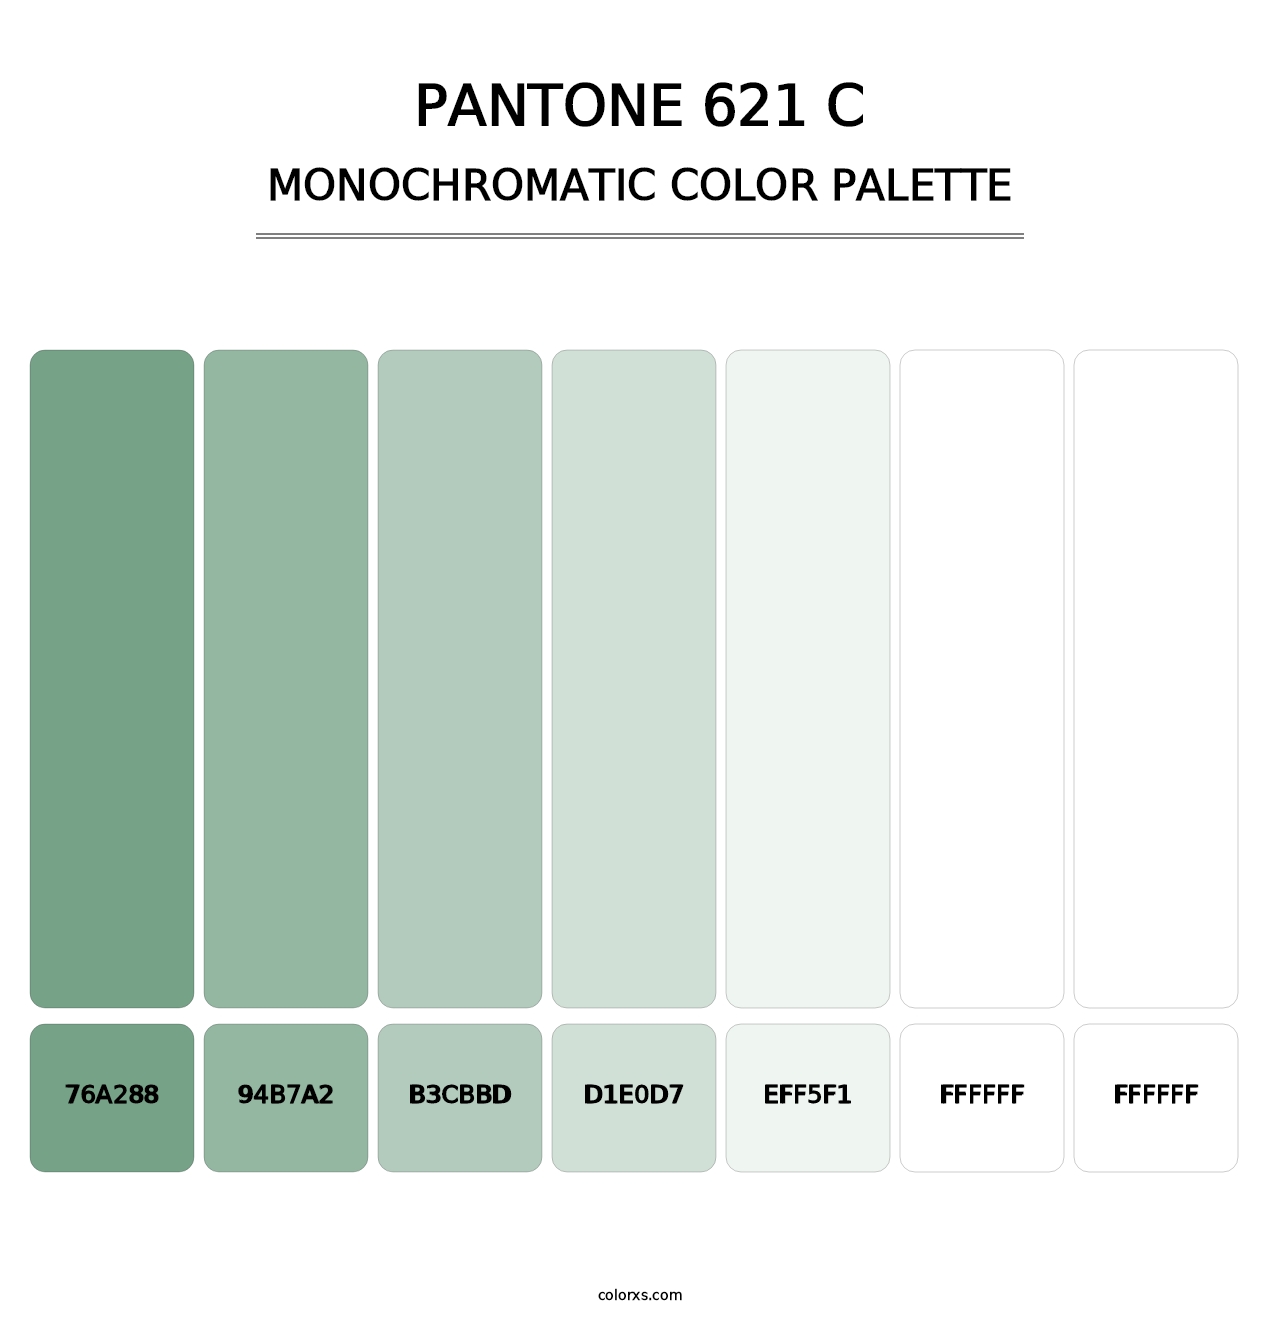 PANTONE 621 C - Monochromatic Color Palette